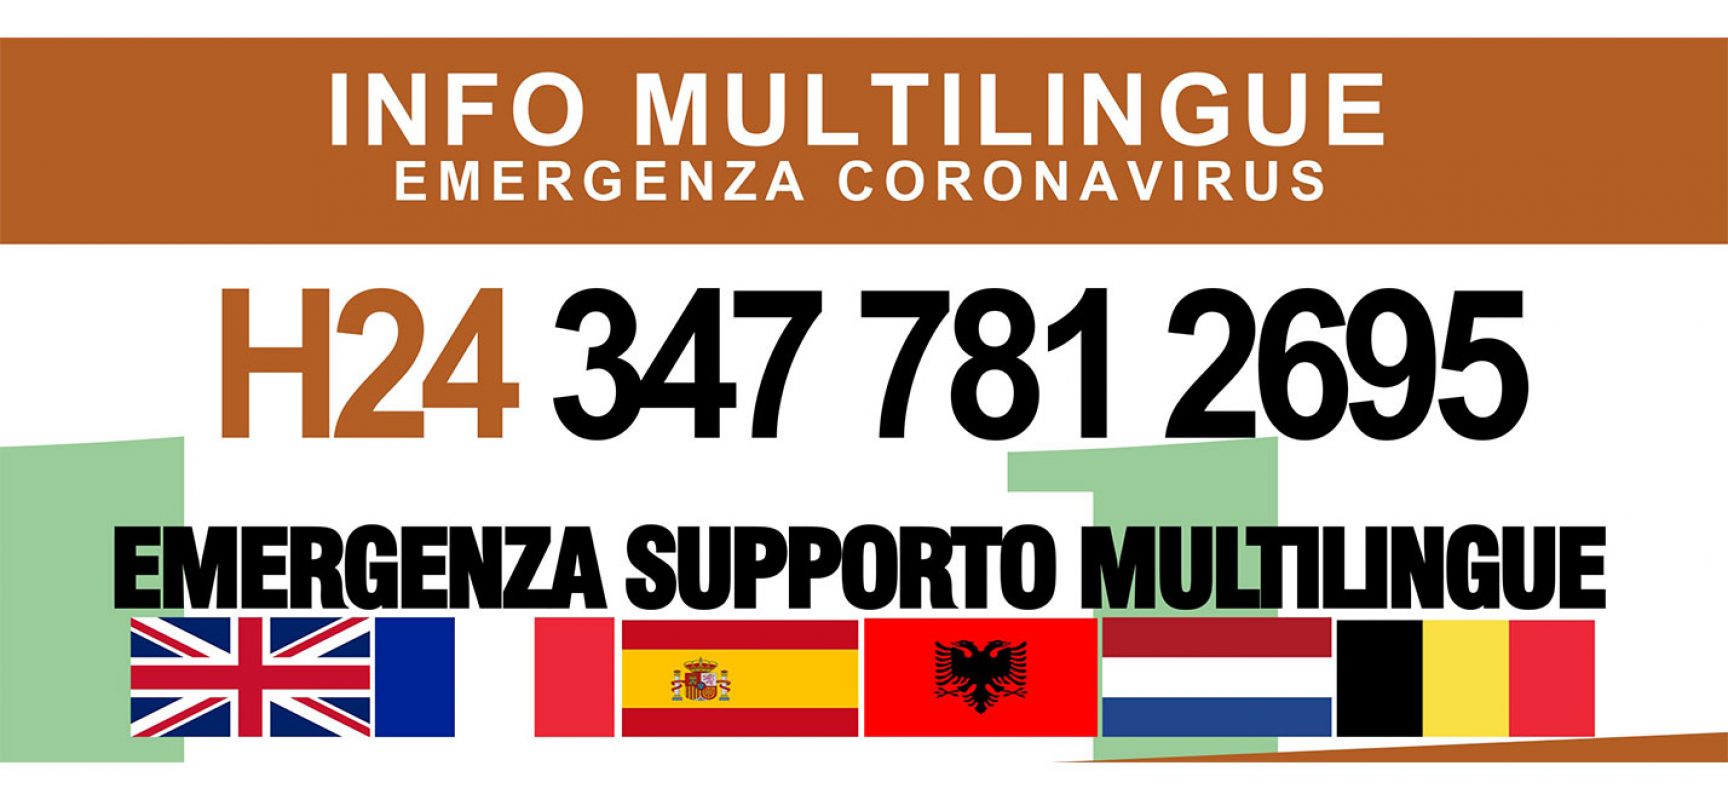 Emergenza Coronavirus, attivato a Bisceglie il supporto multilingue